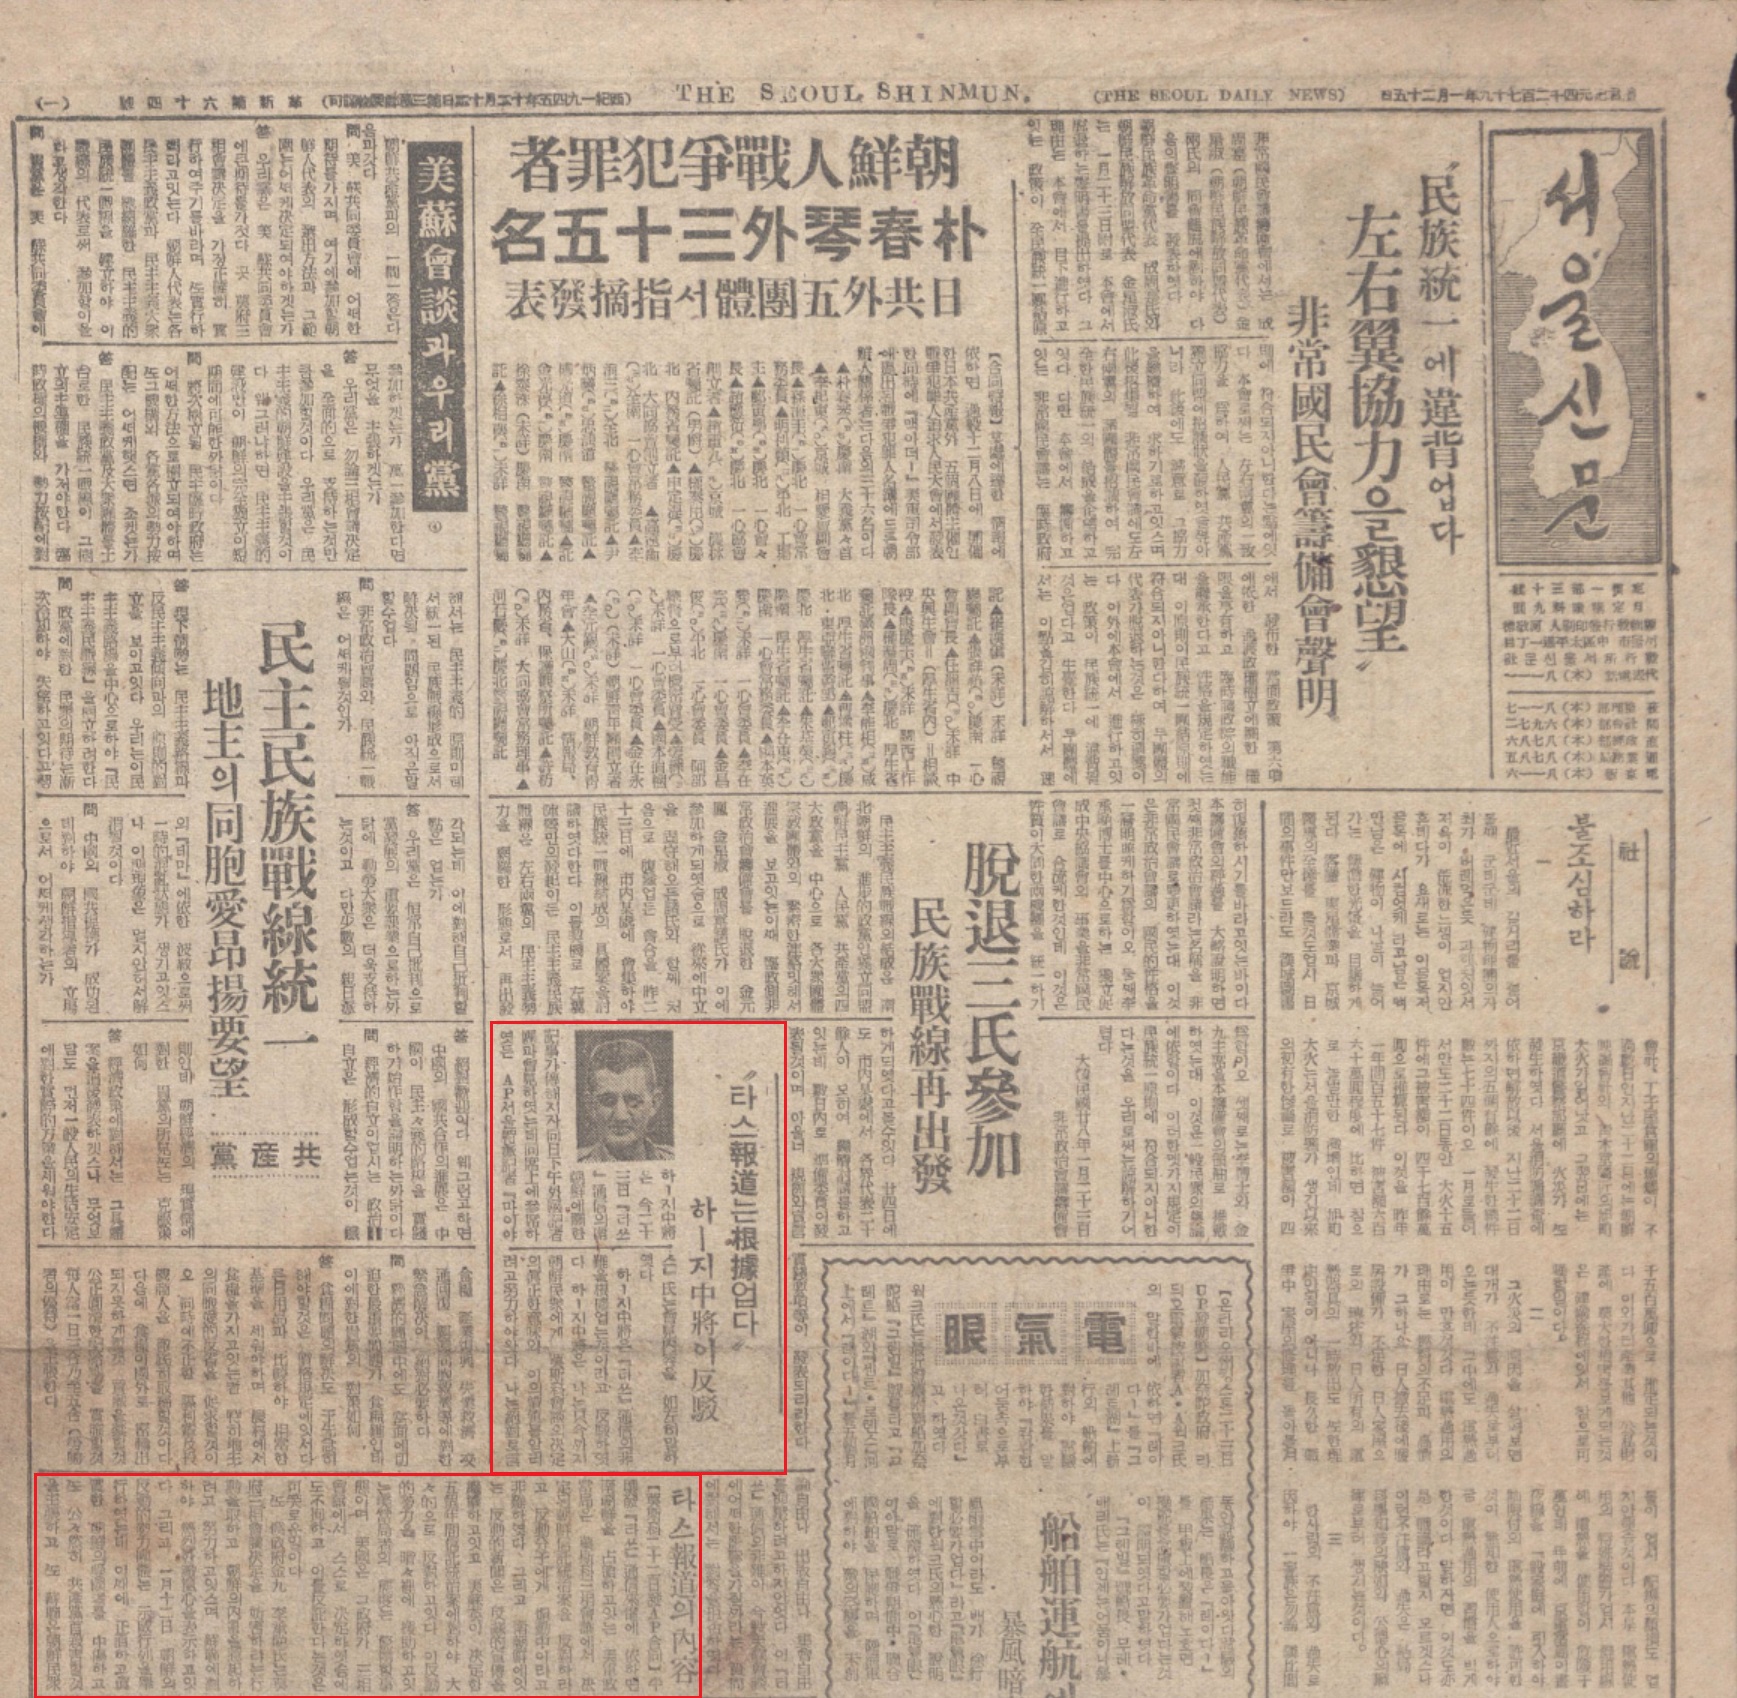 서울신문 1946.1.25 (타스보도는 근거없다. 하지중장이 반박)